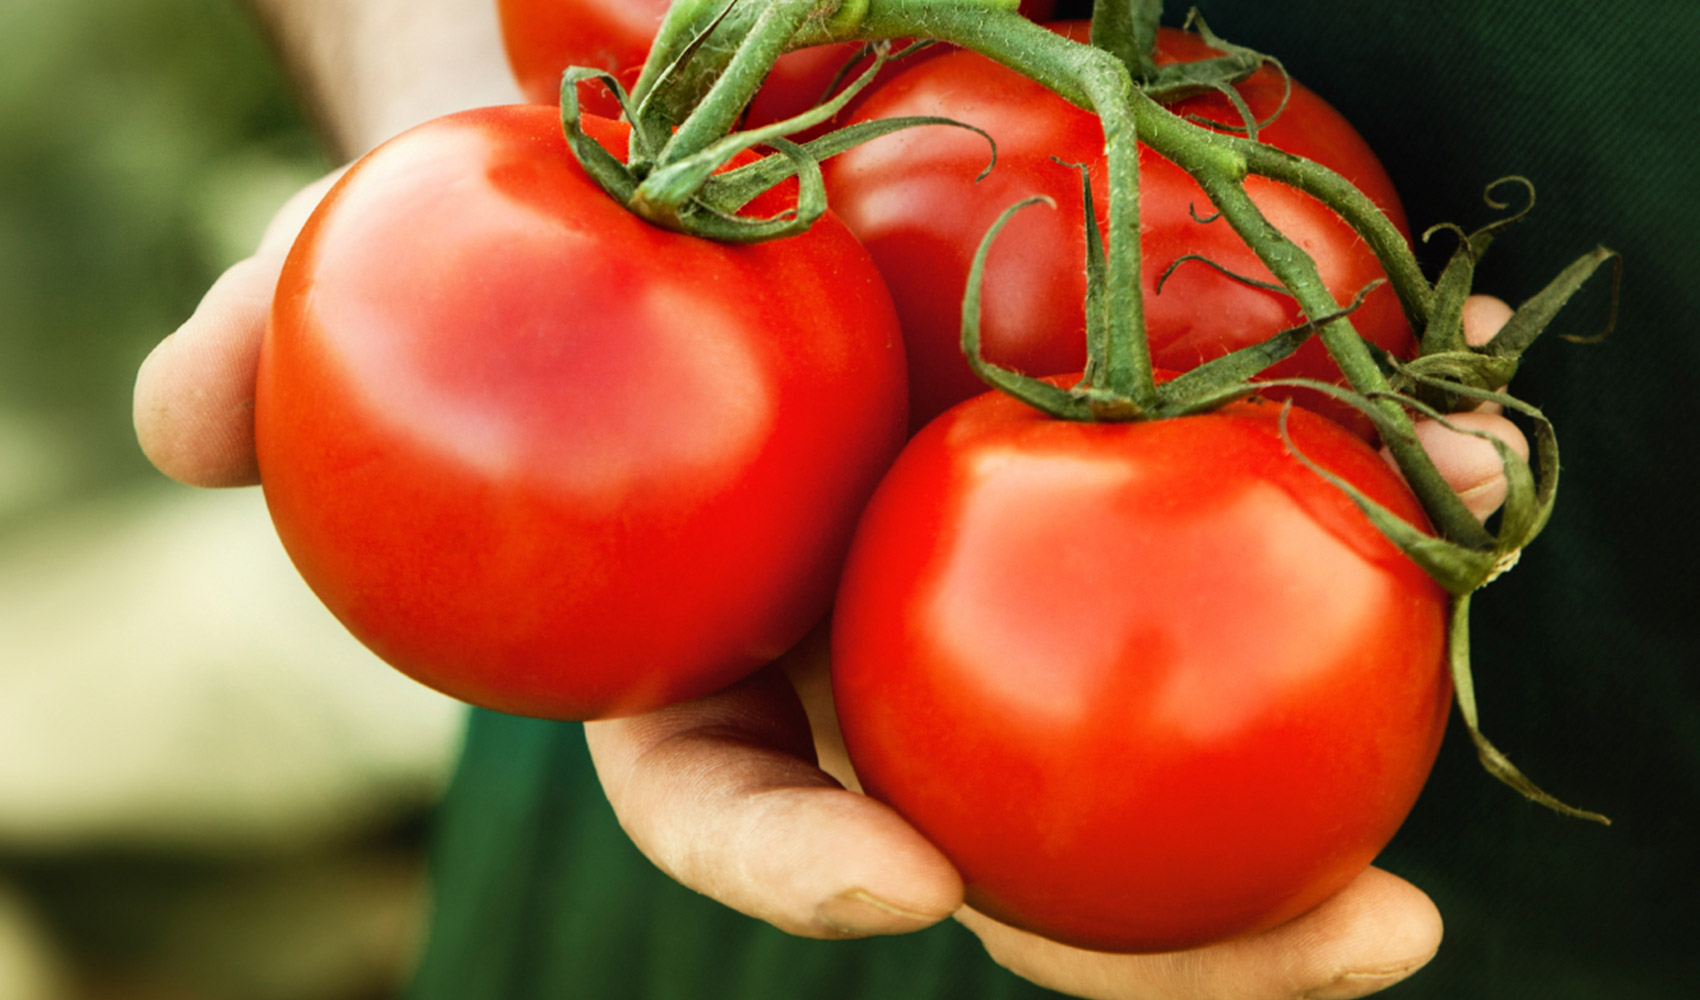 تعرف معنا على فوائد واسرار الطماطم للصحة والجسم